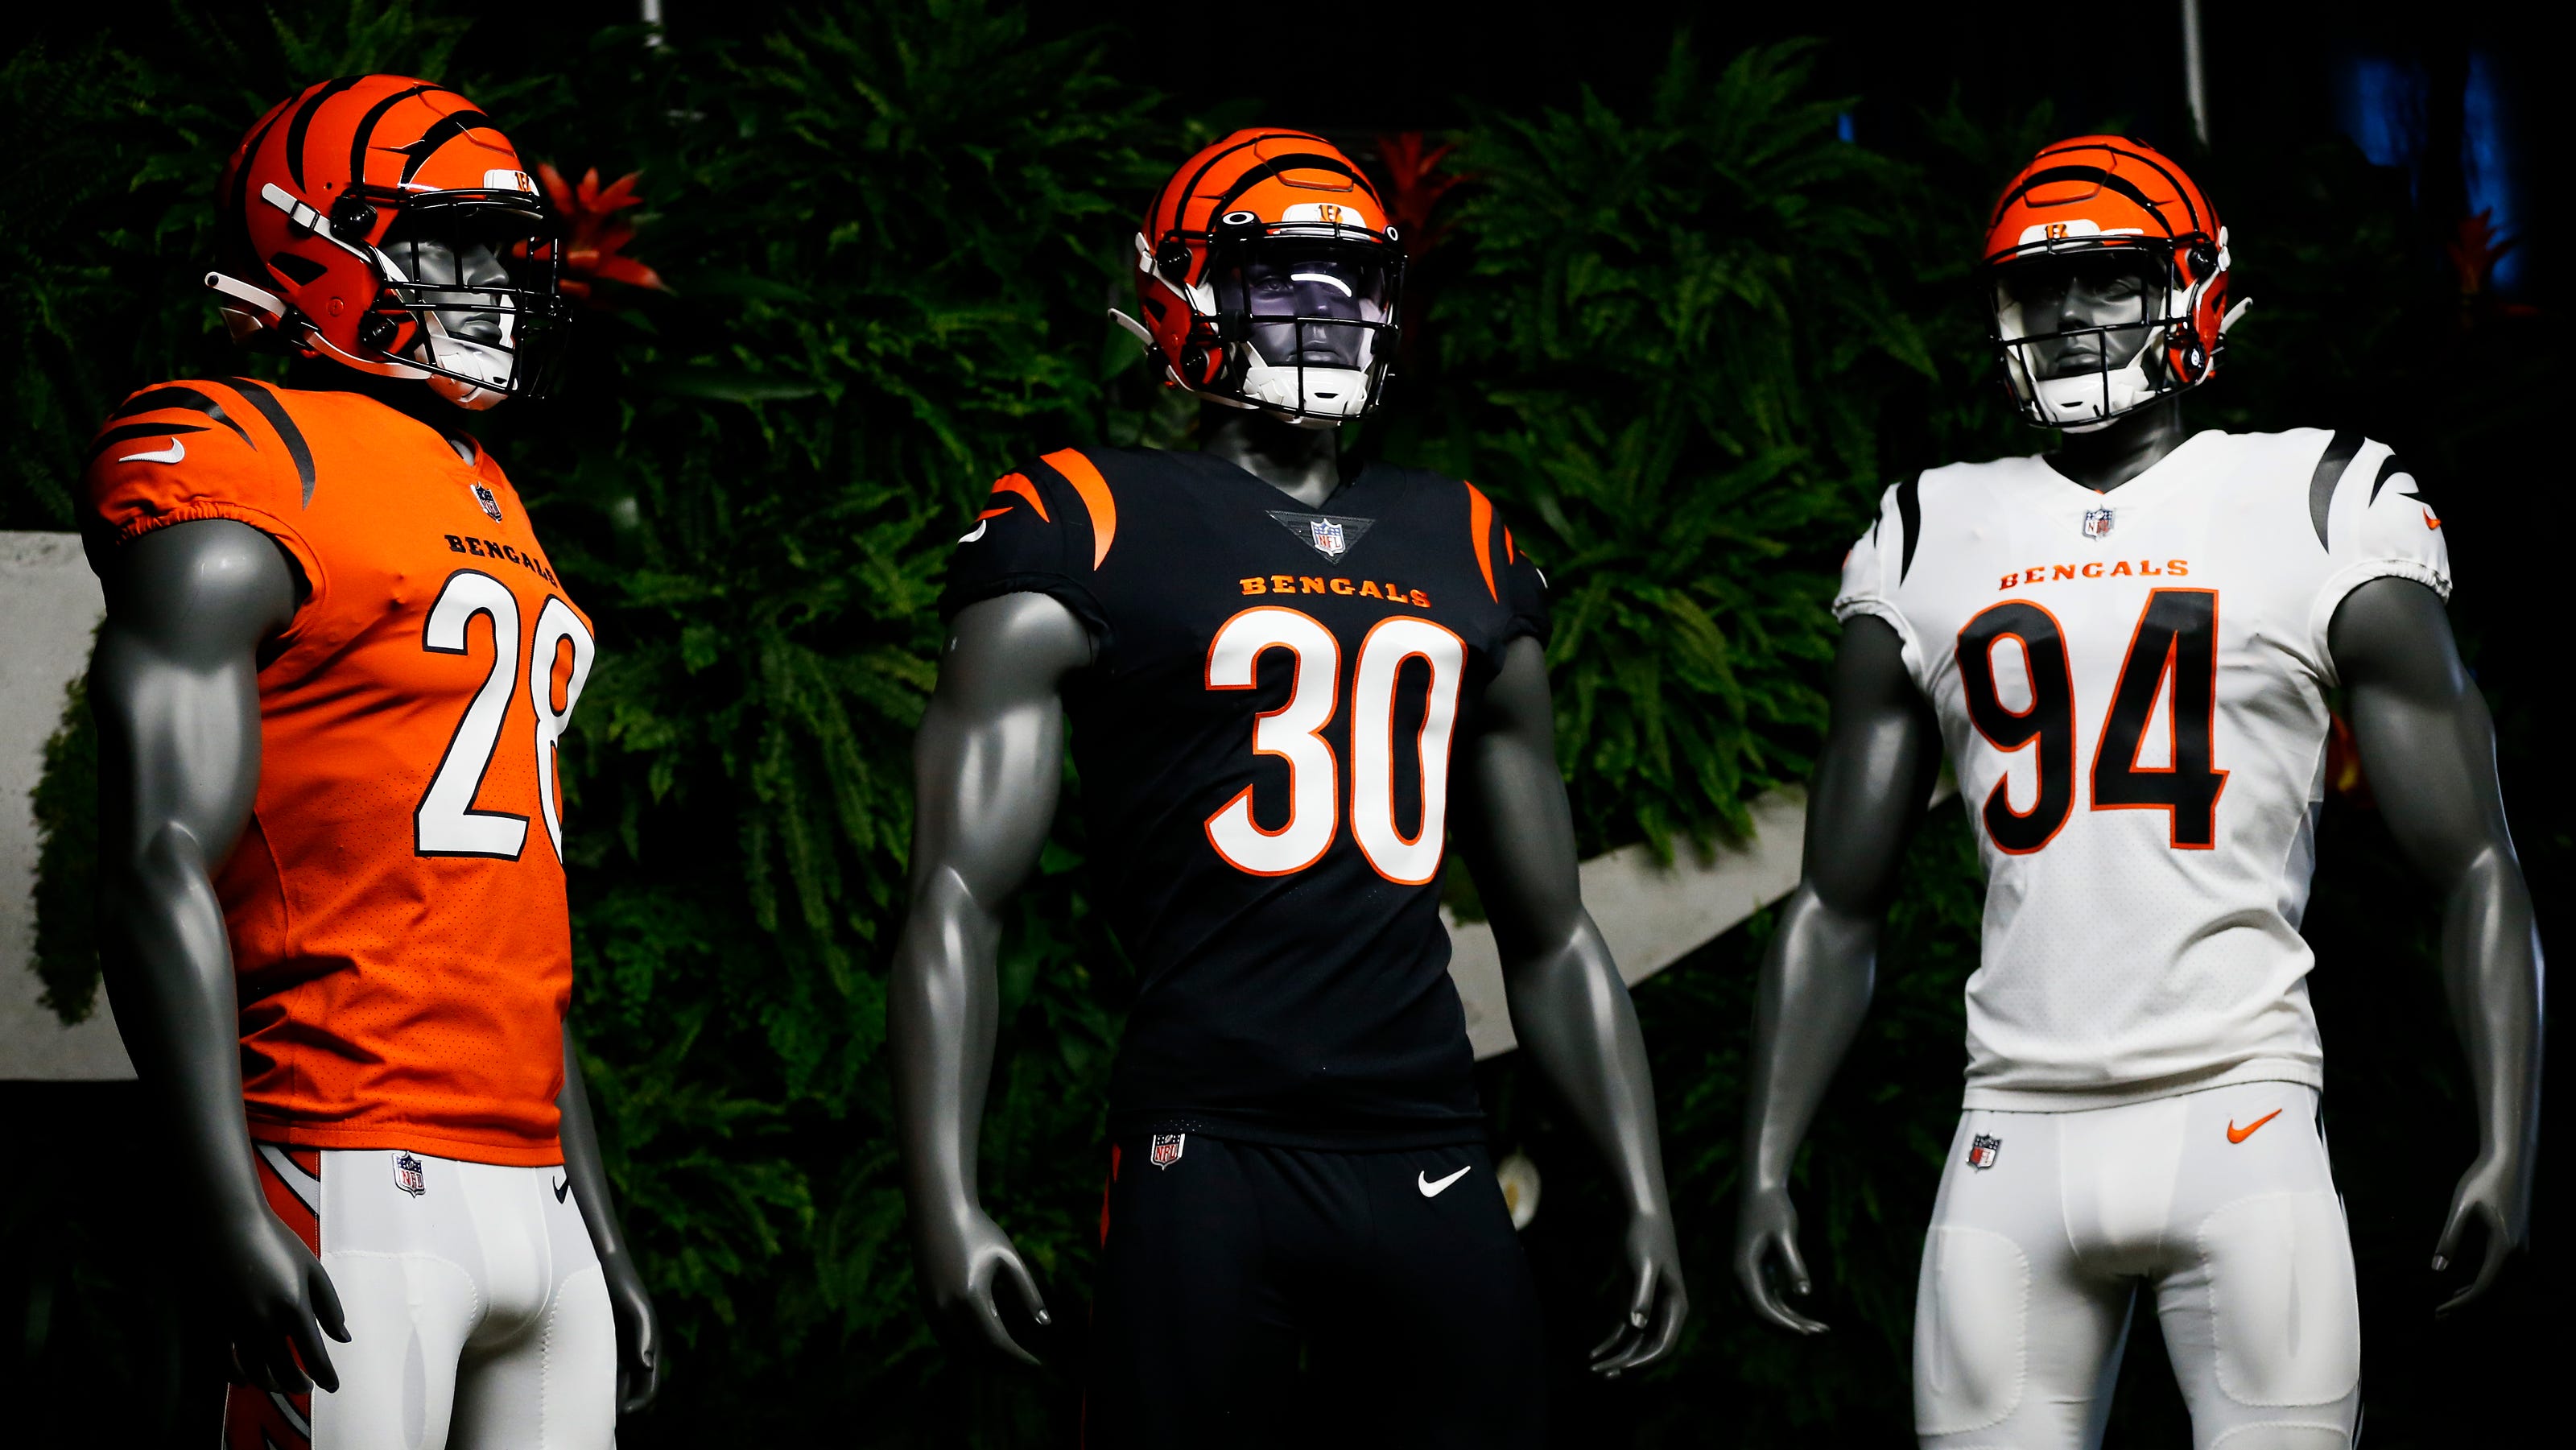 Cincinnati Bengals' new uniforms for 2021 season mix past ...